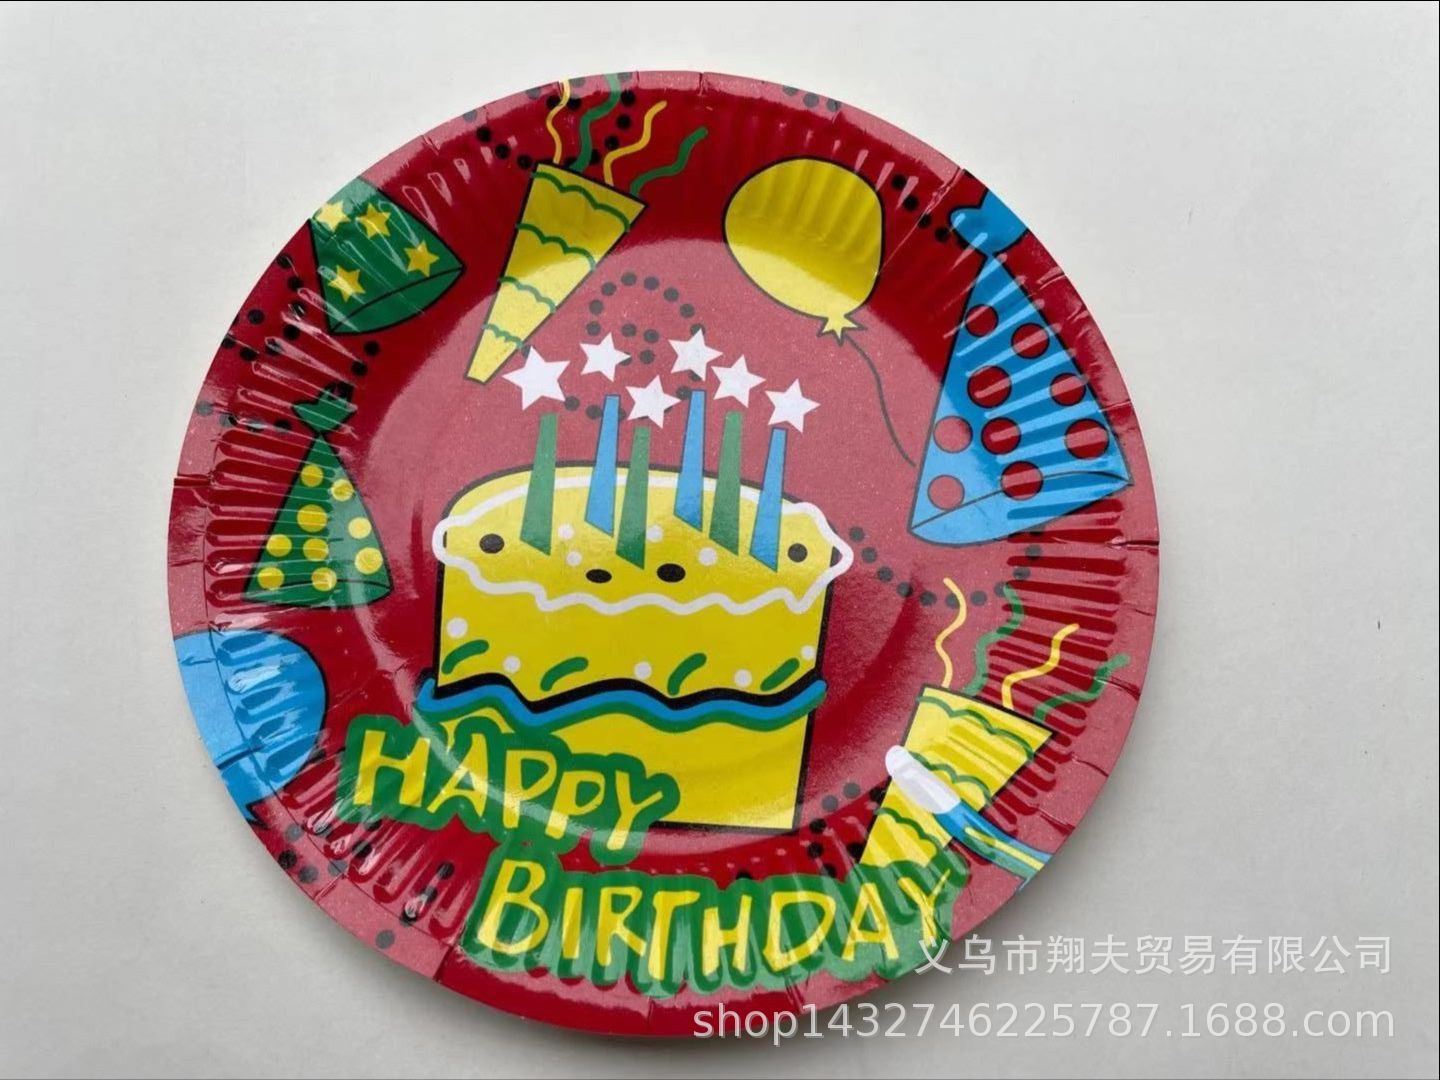 批发一次性纸质9寸圆盘 烧烤盘派对装扮用品蛋糕餐盘 生日纸盘子详情图5